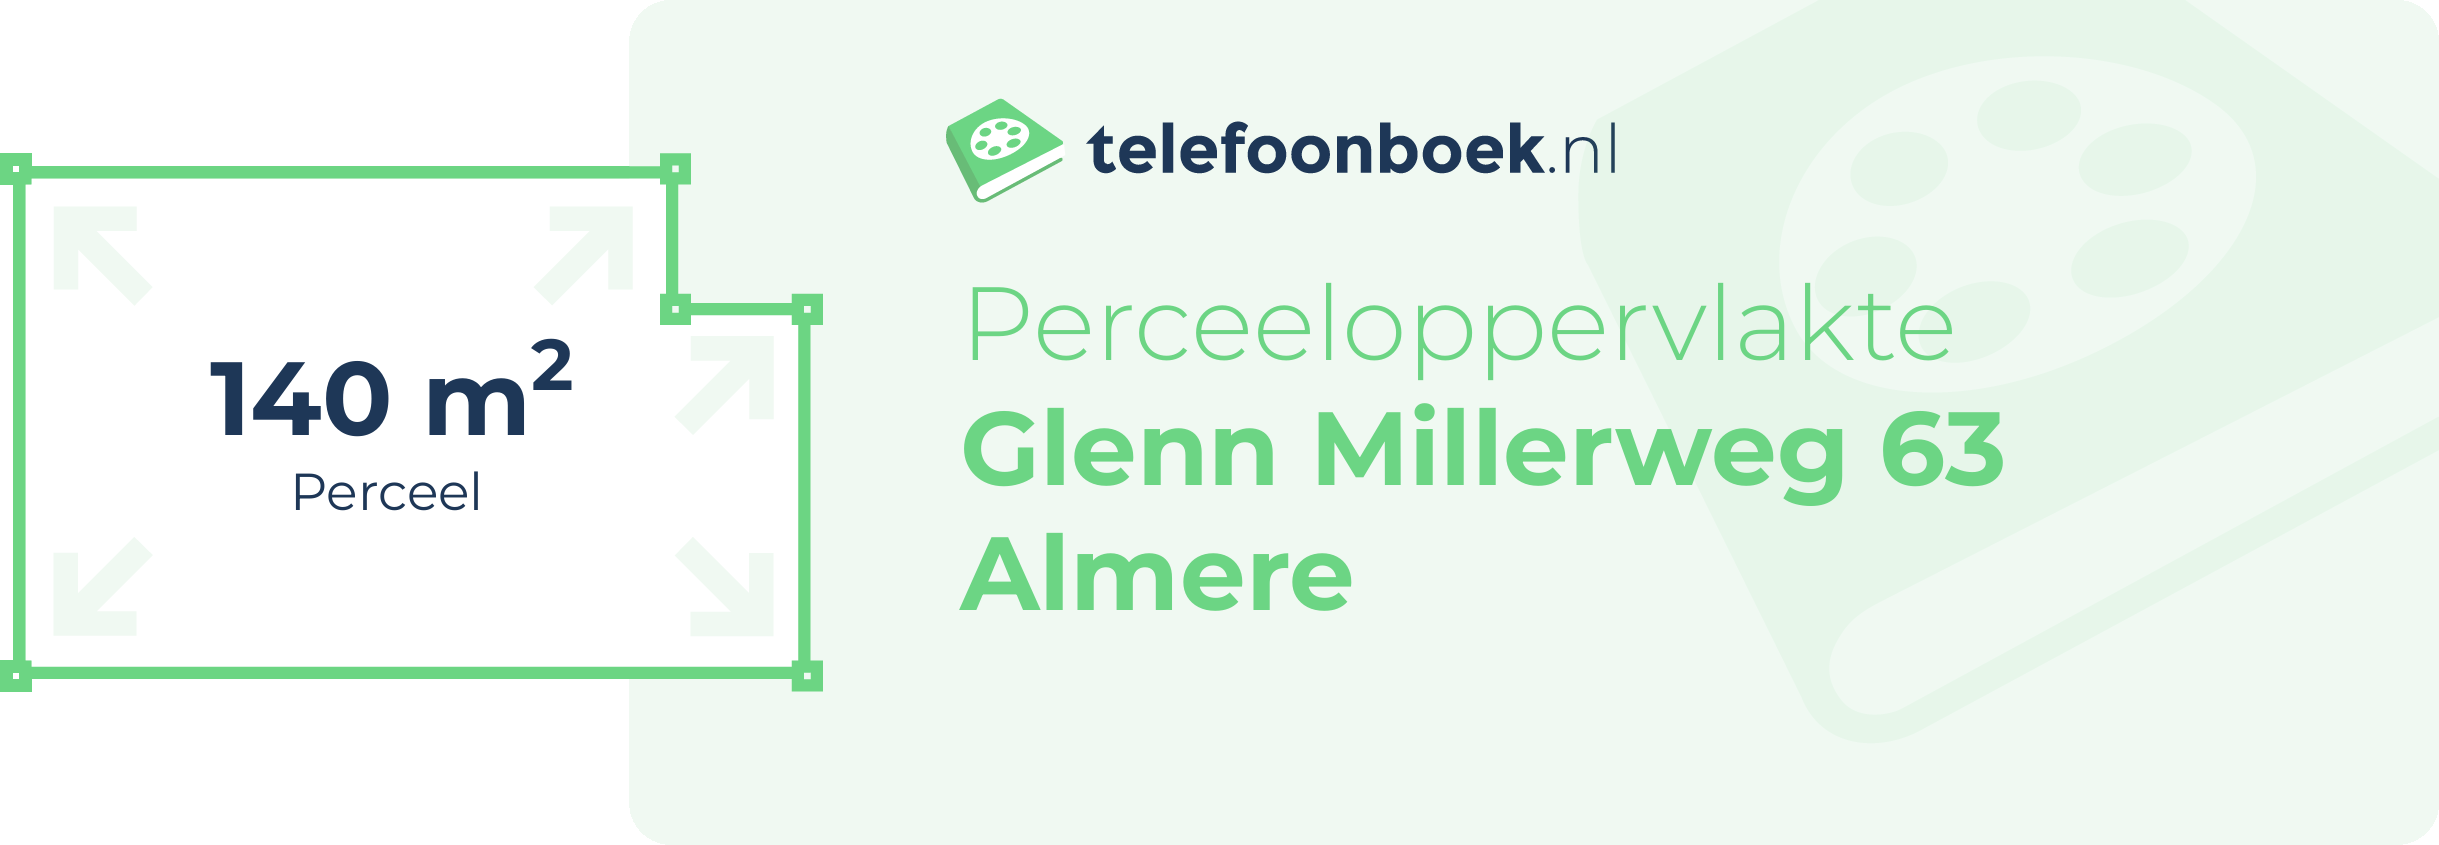 Perceeloppervlakte Glenn Millerweg 63 Almere